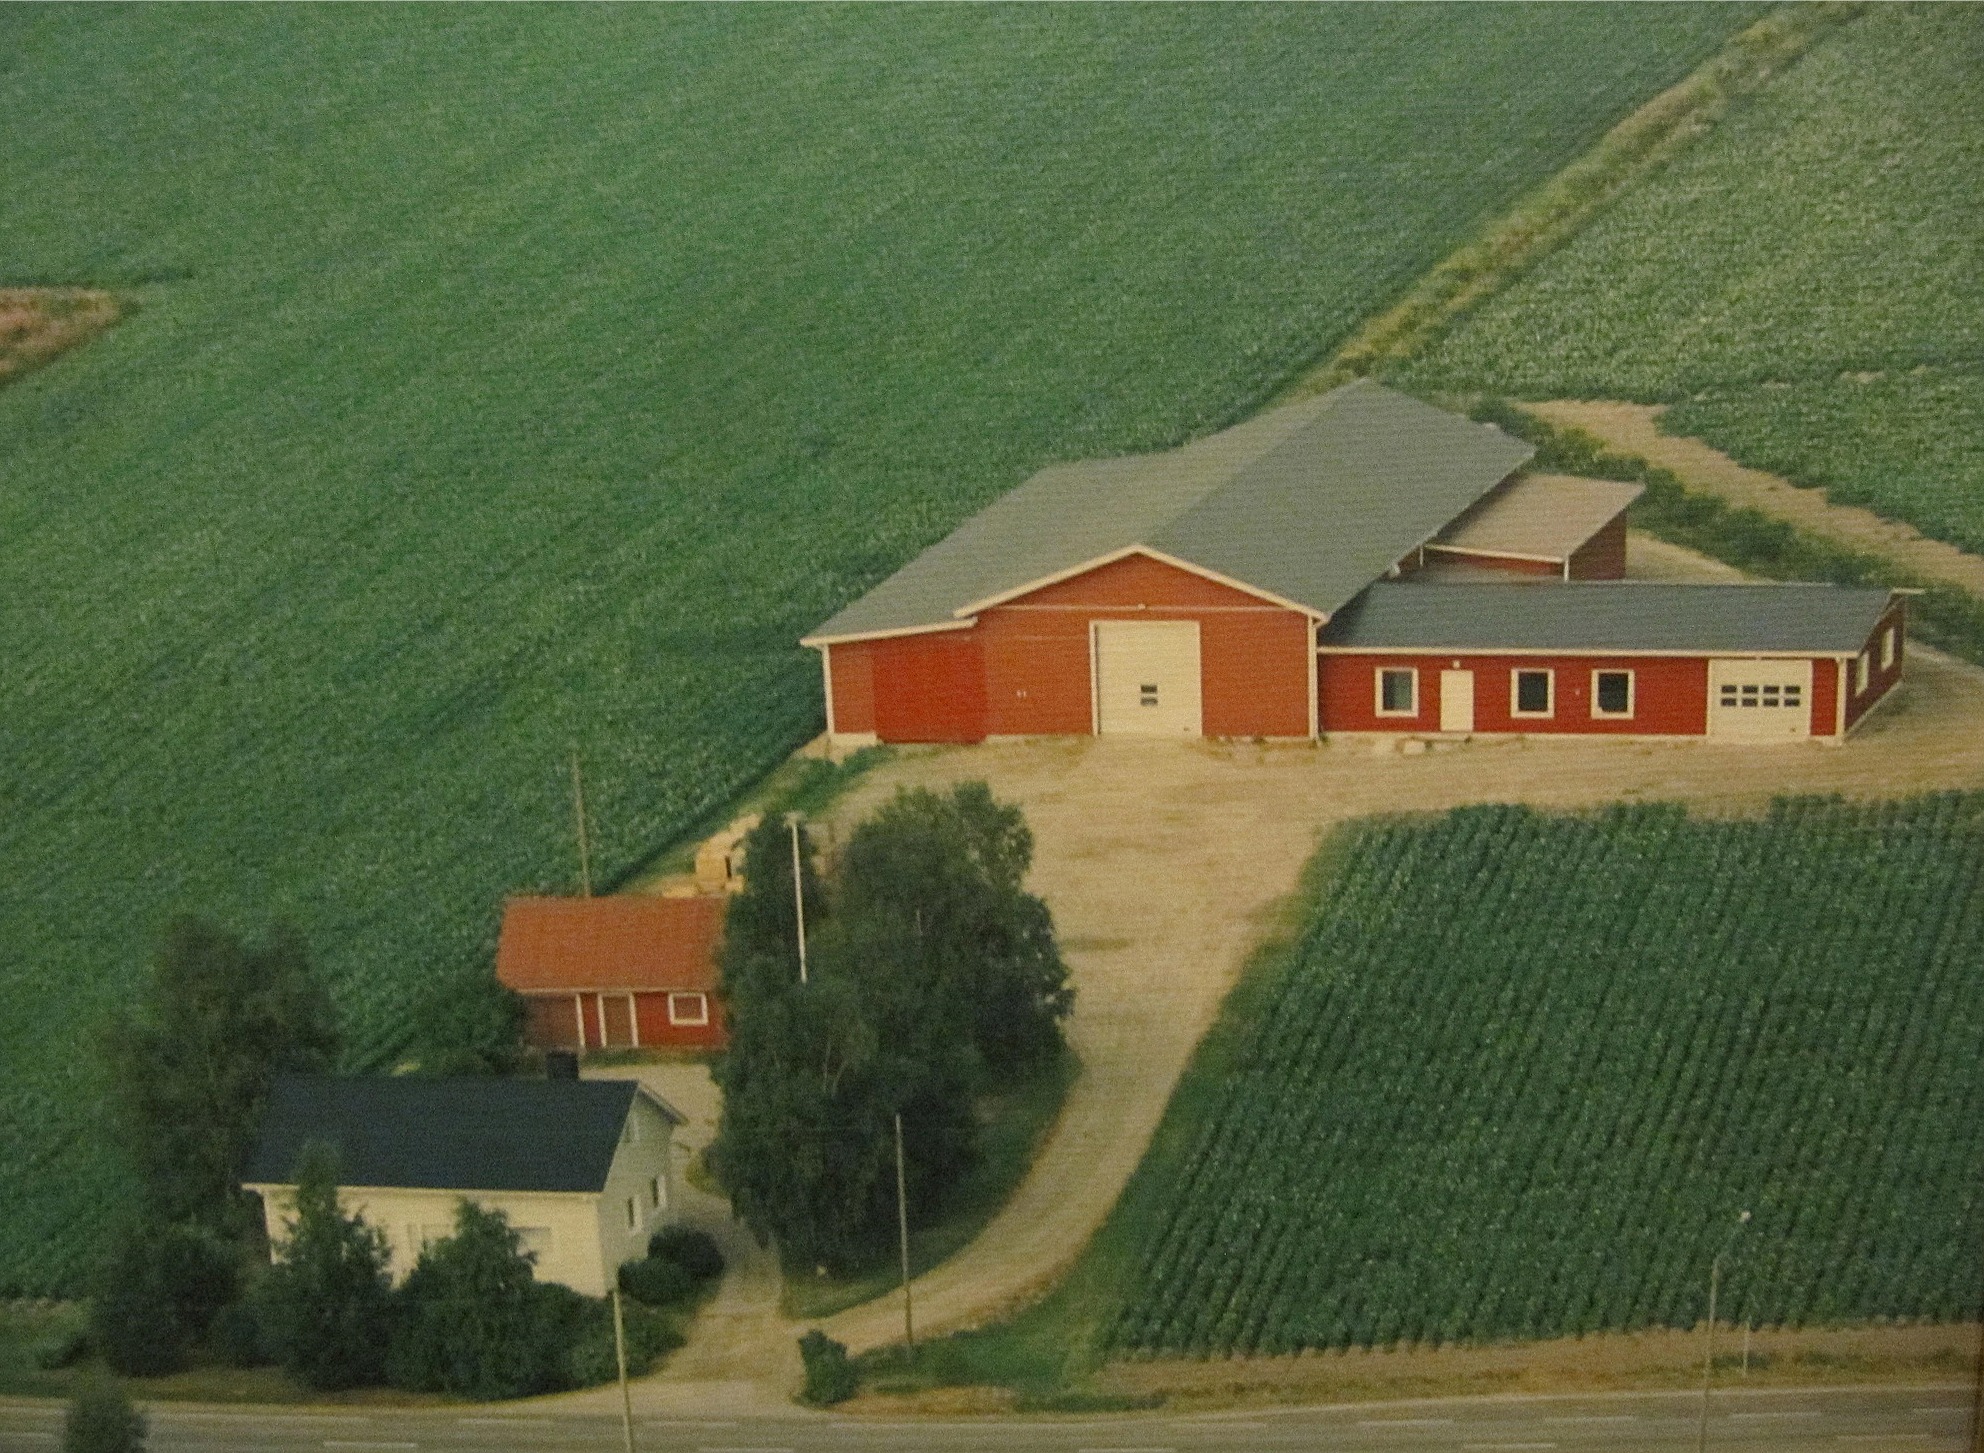 På flygfotot från 1994 så syns Veli Kangas gård nere till vänster. Den stora byggnaden i bakgrunden är Harry Kangas potatislager och verkstad.